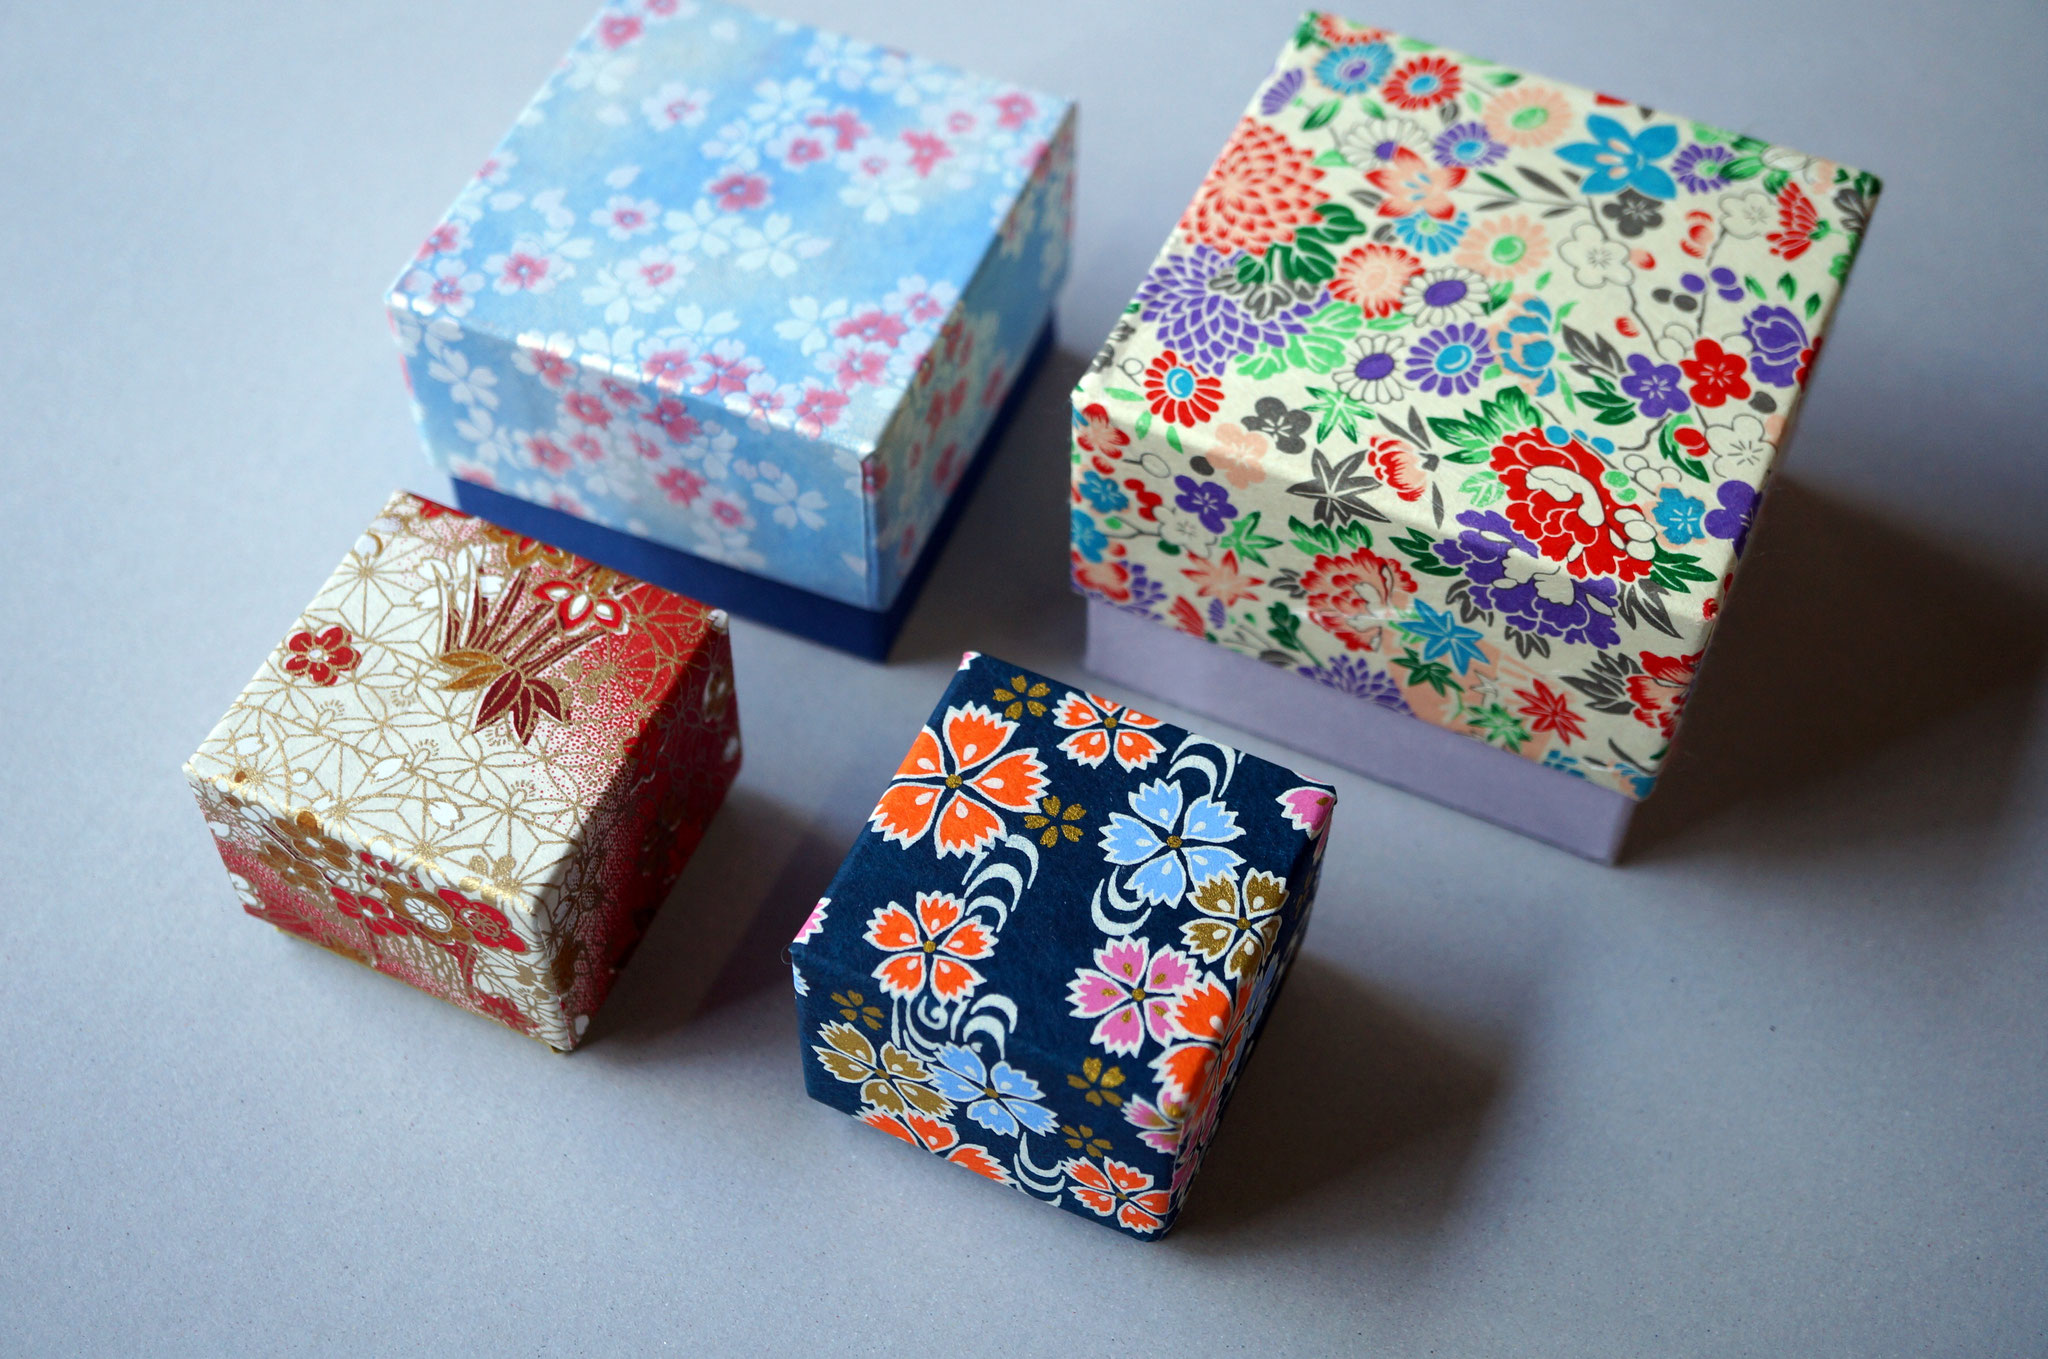 多種多様な千代紙を使った貼り箱の作製事例